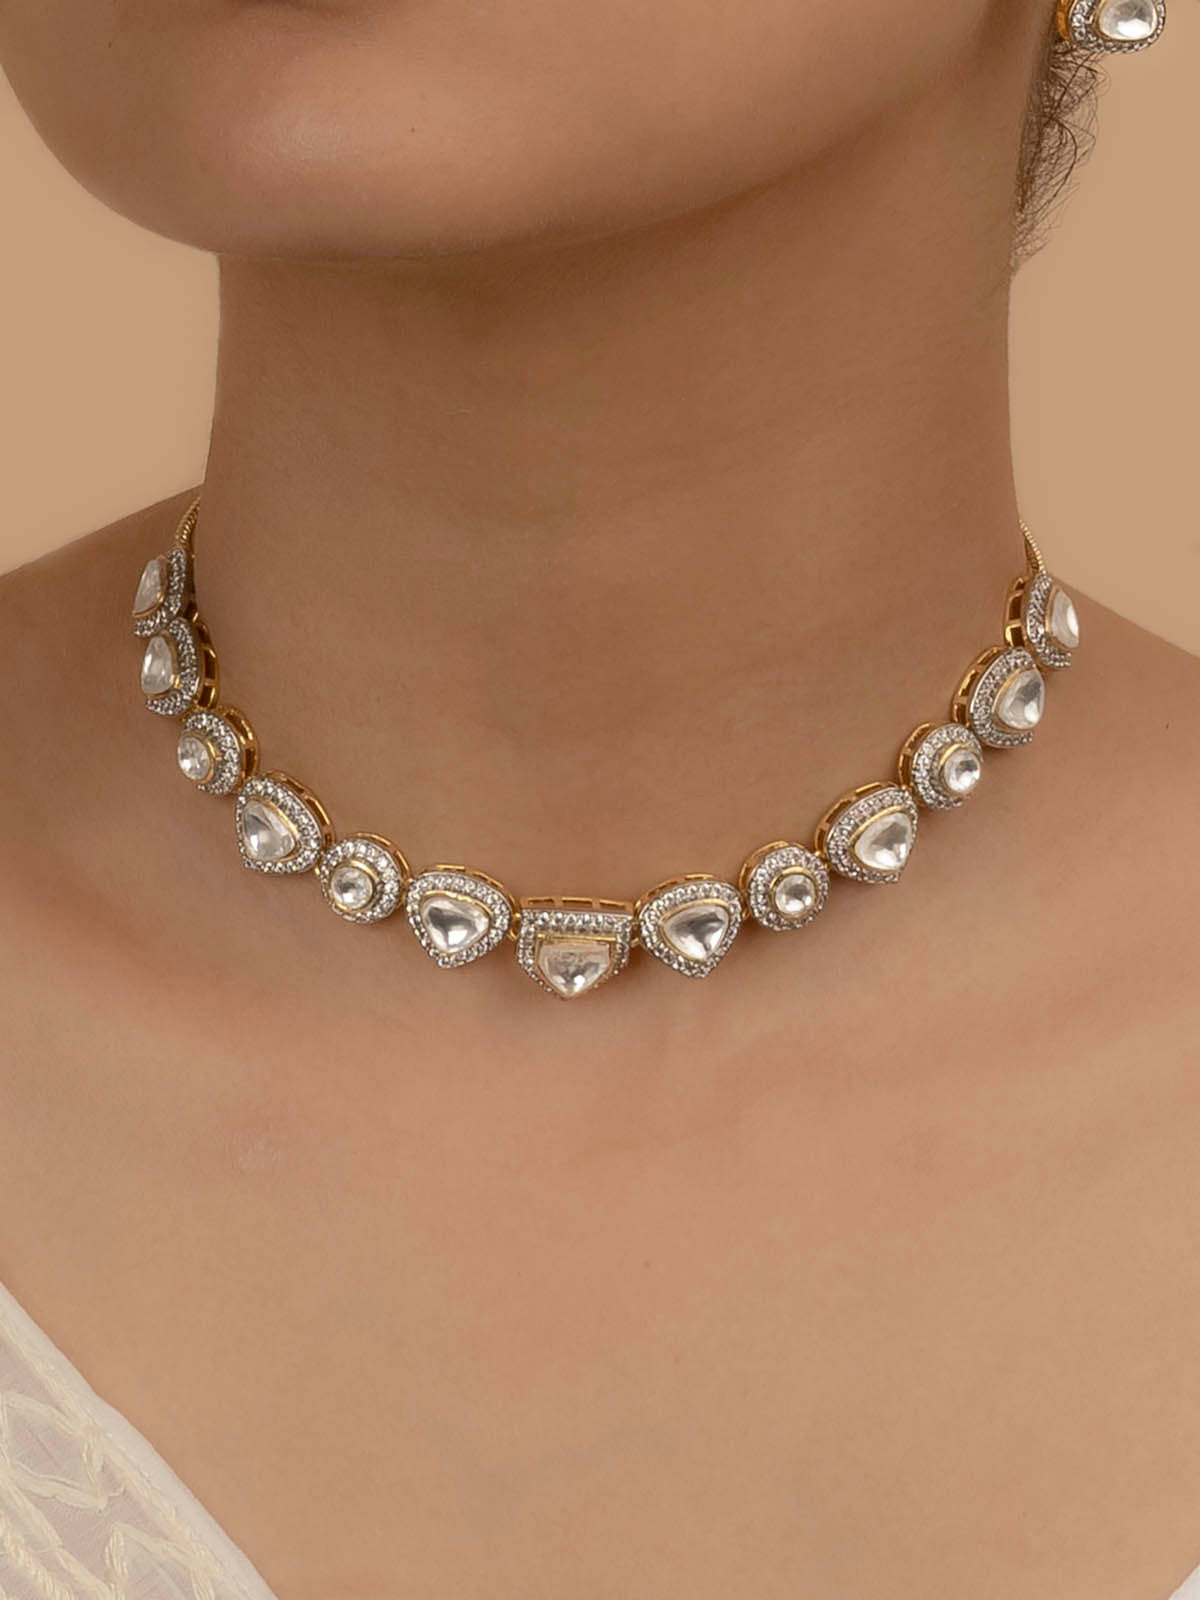 PK-S15 - White Color Faux Diamond Medium Necklace Set